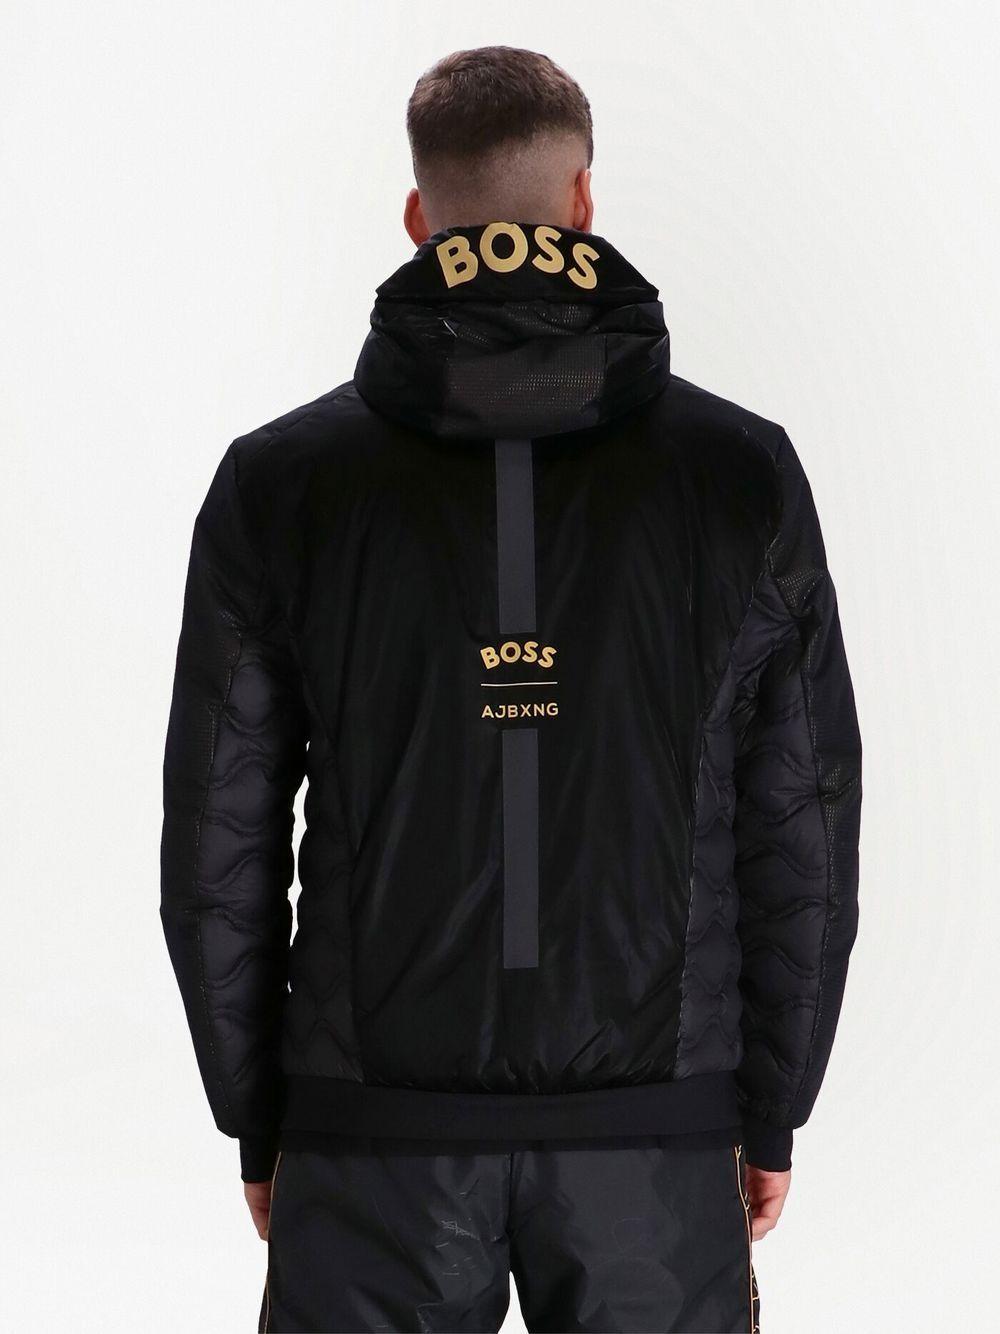 BOSS by HUGO BOSS X Ajbxng Zip-up Hooded Jacket in Black for Men | Lyst